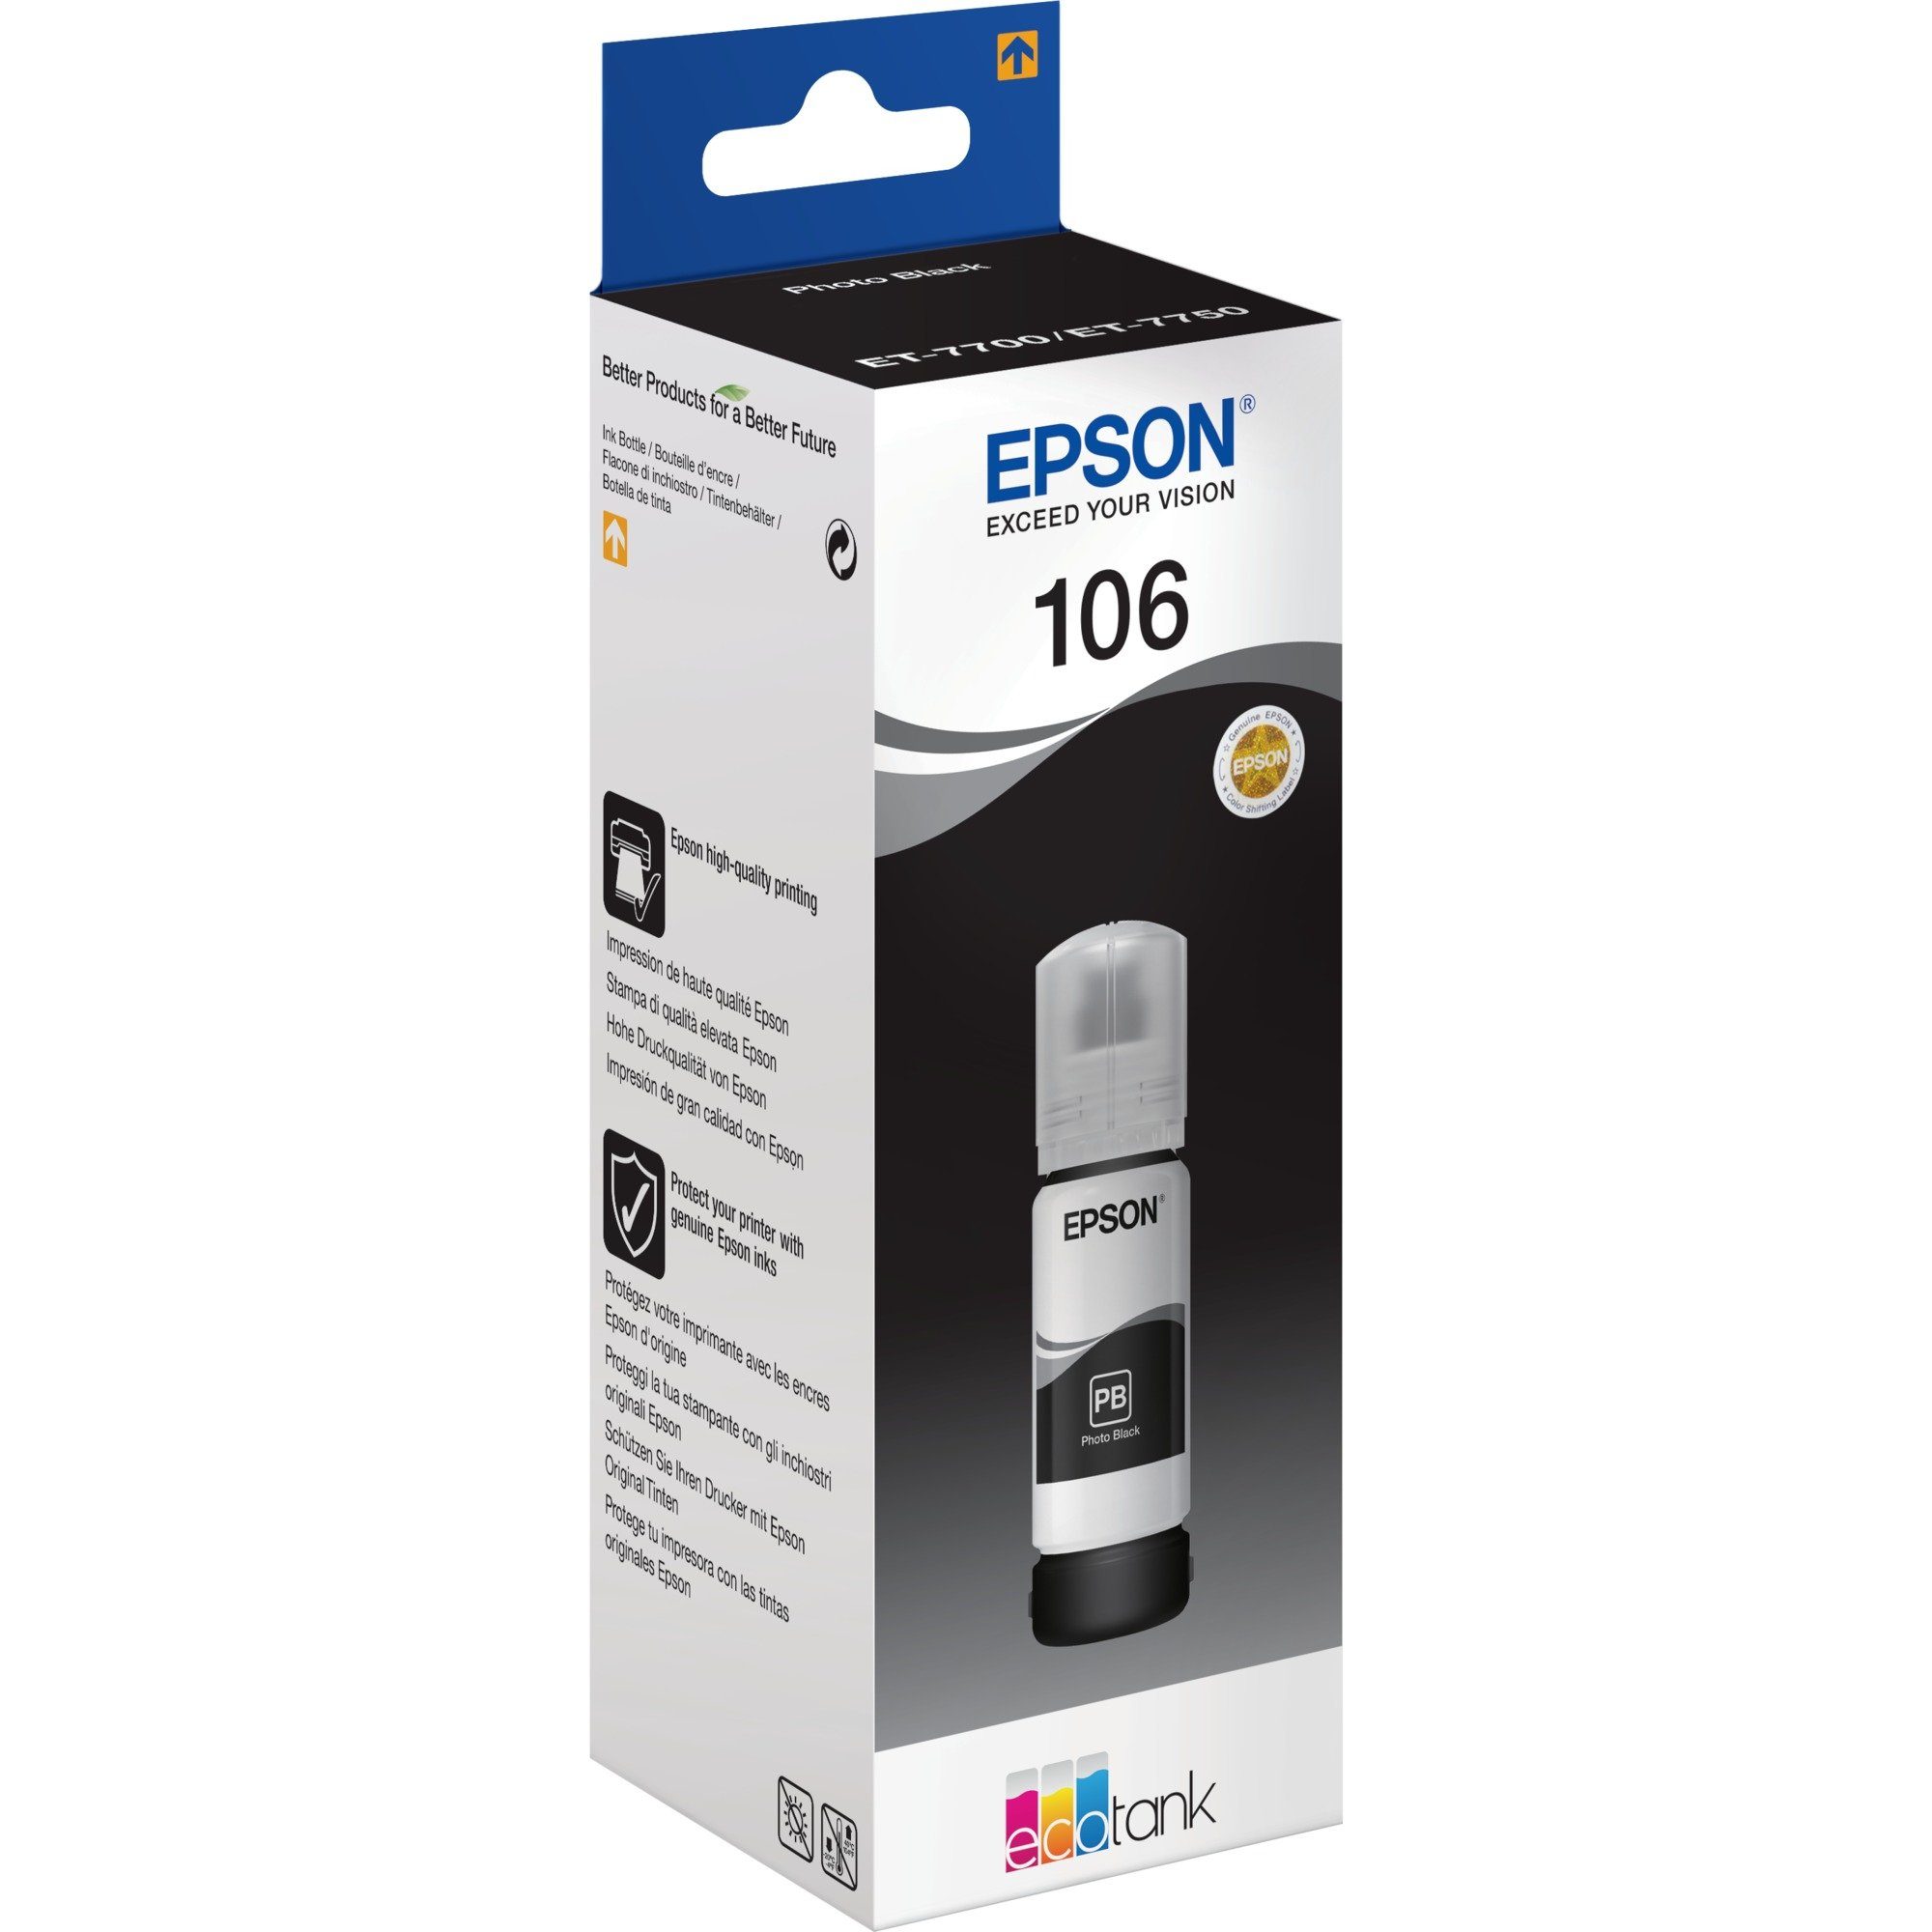 Epson Epson Tinte photo-schwarz 106 Eco Tank Tintenpatrone | Tintenpatronen